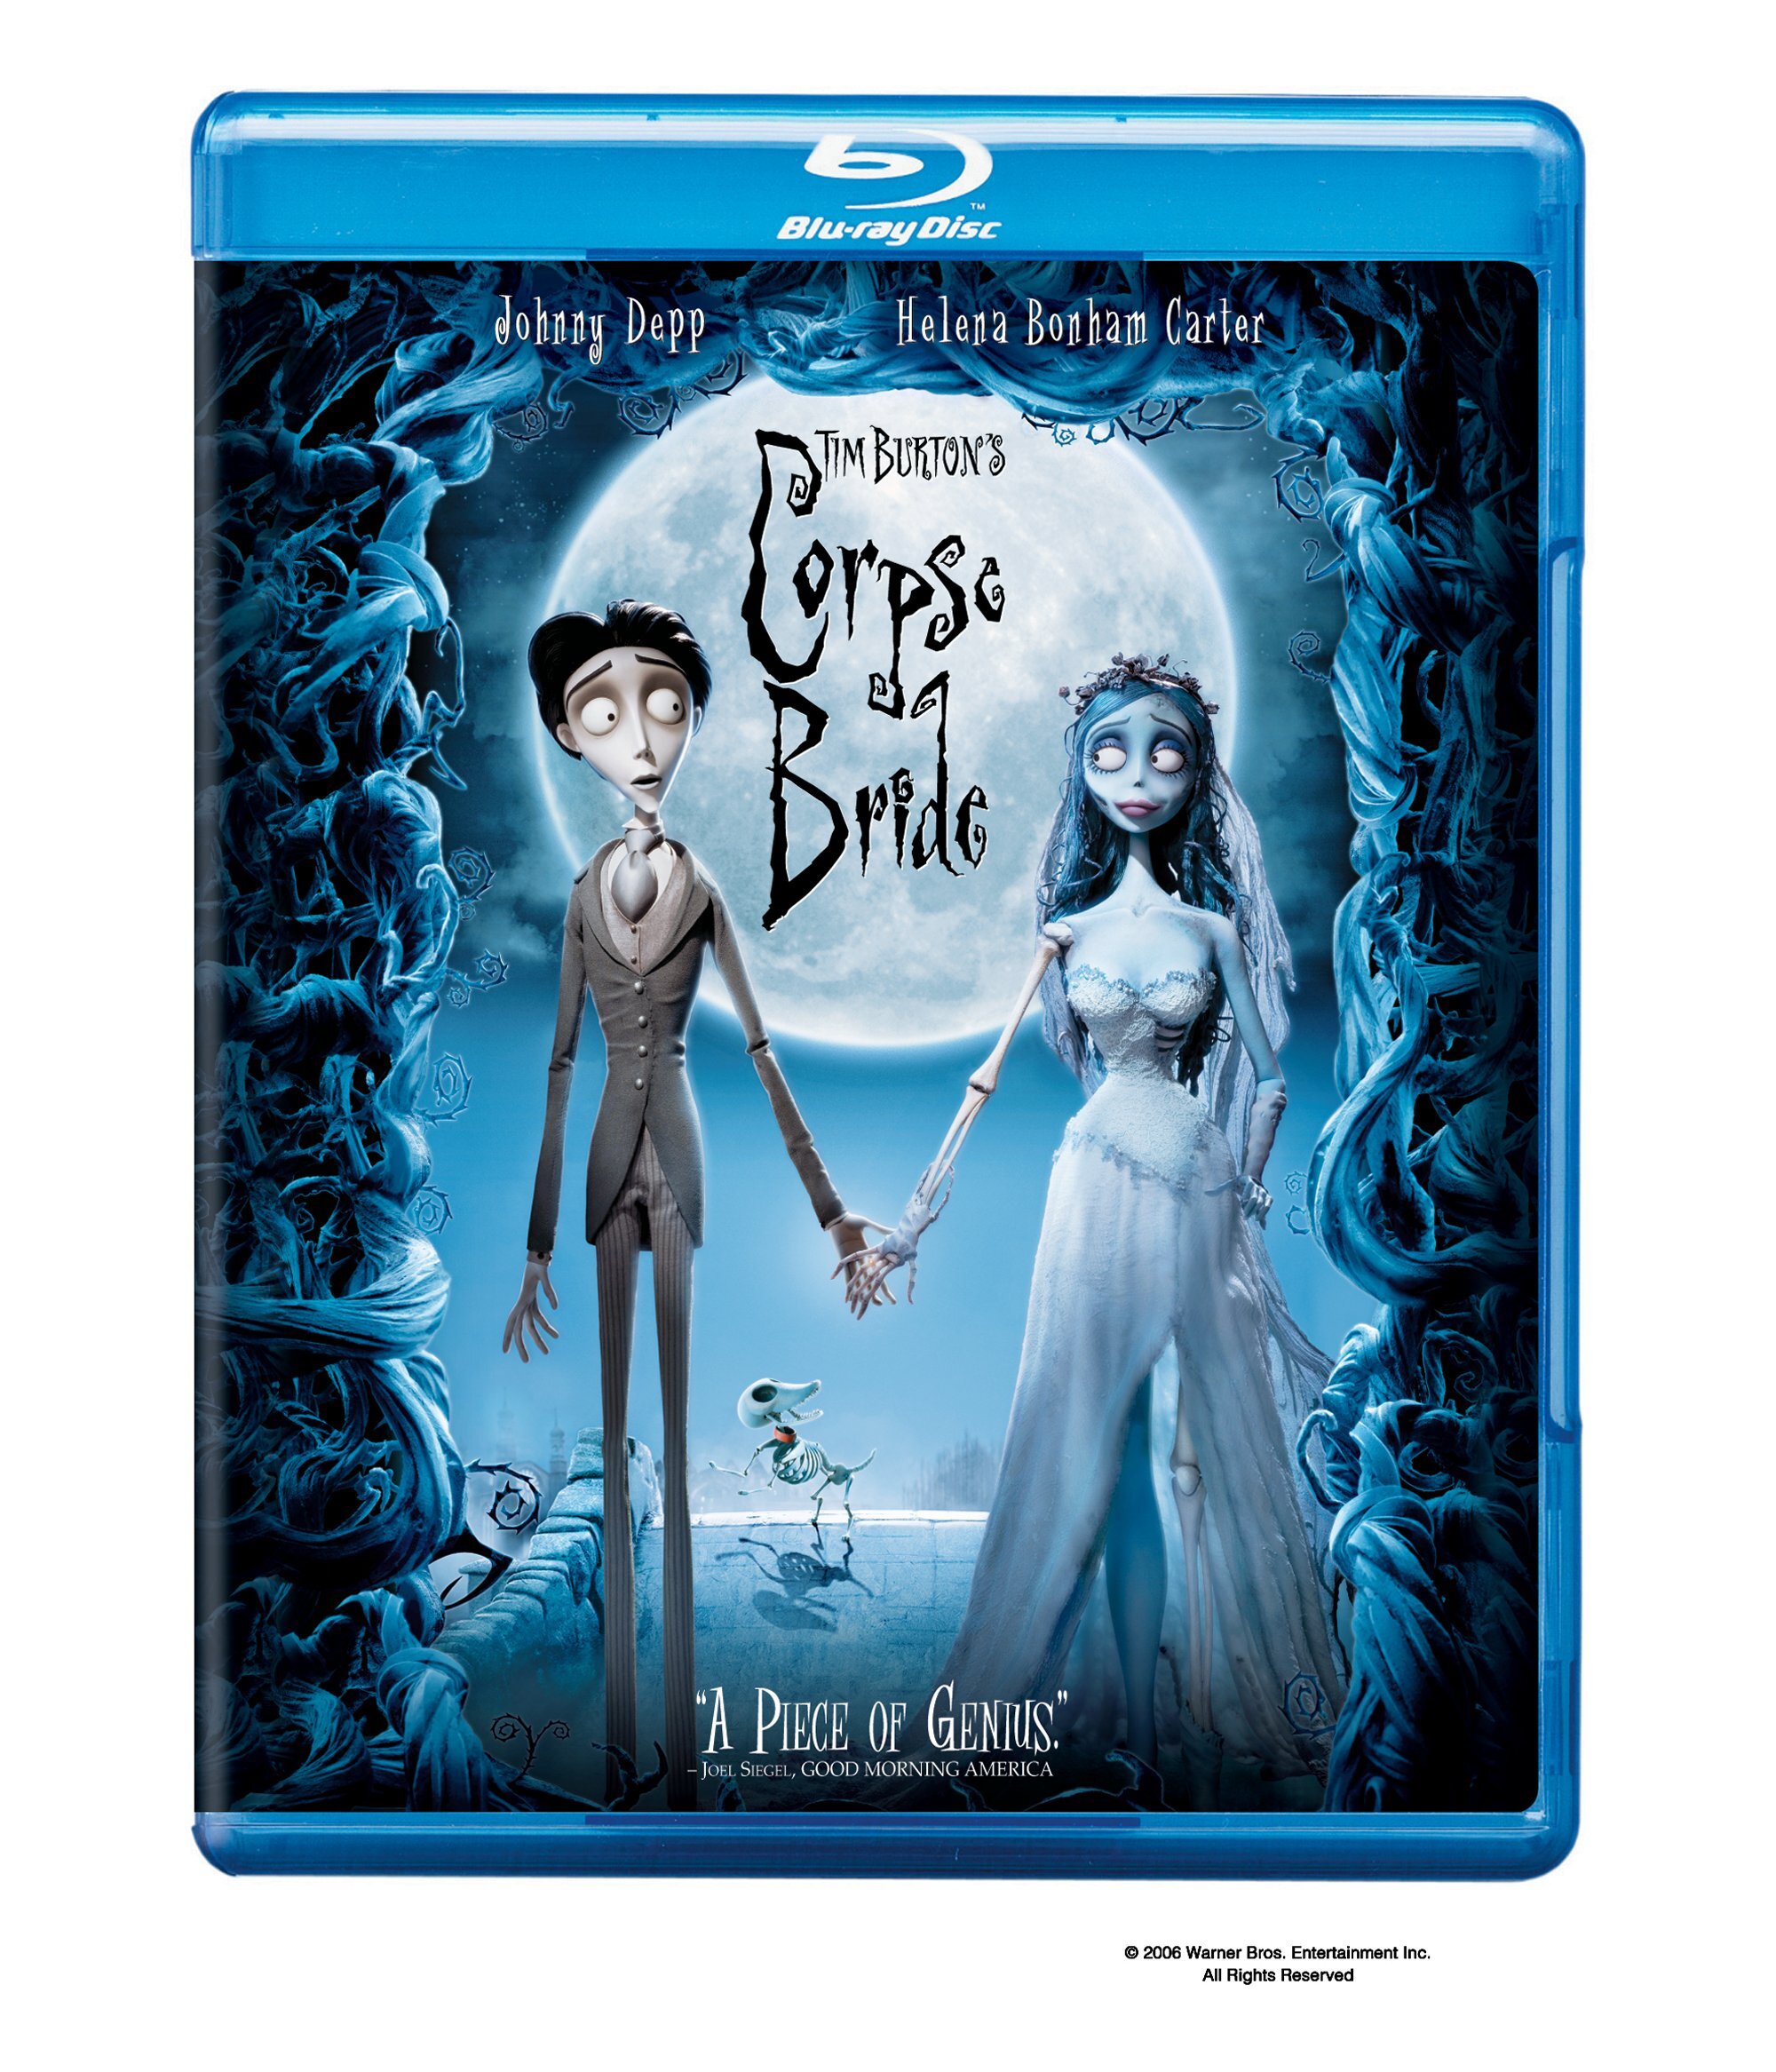 Tim Burton's Corpse Bride - Blu-ray [ 2005 ]  - Comedy Movies On Blu-ray - Movies On GRUV